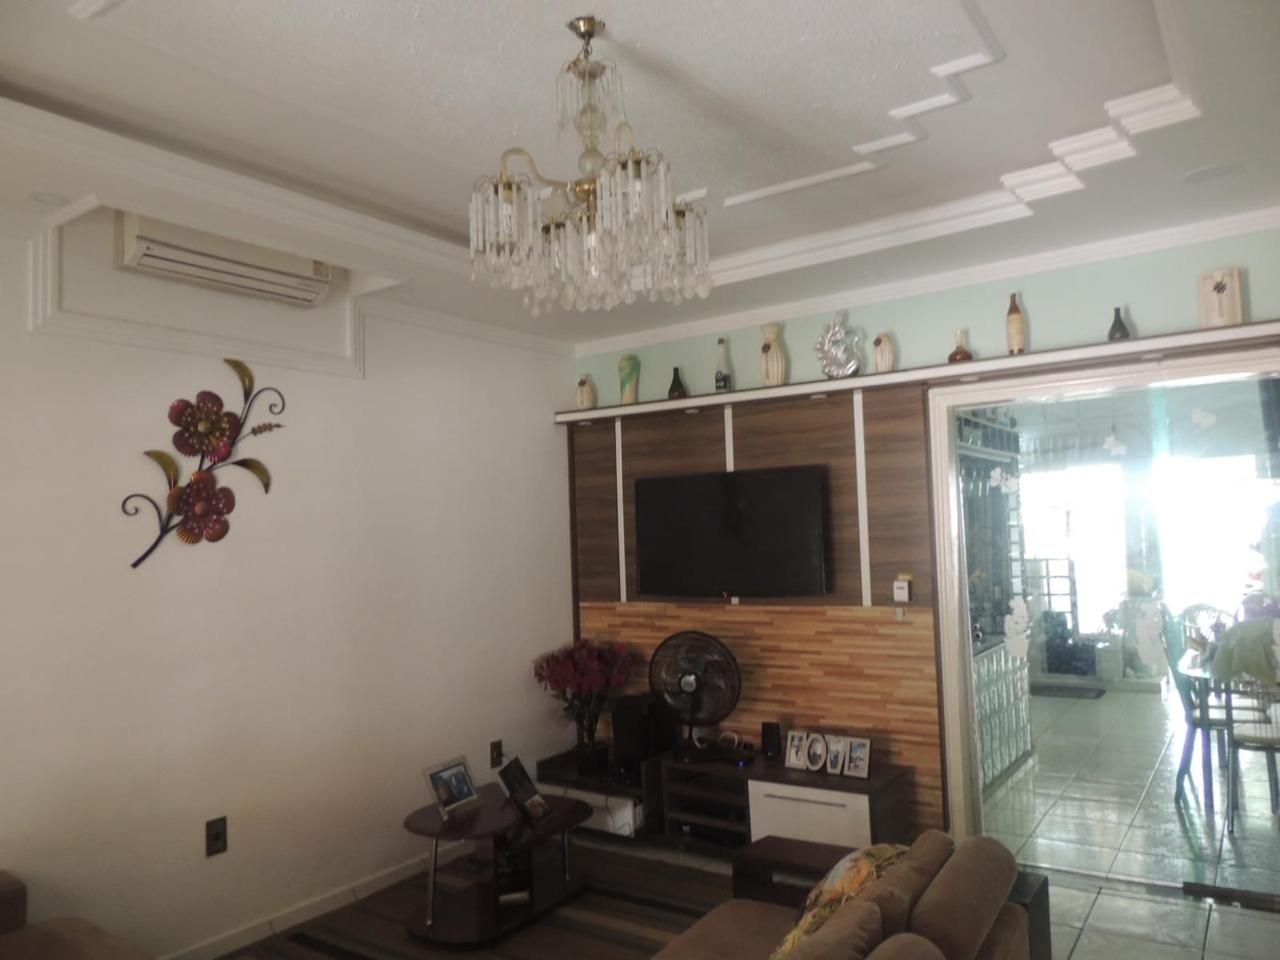 Casa com 5 dormitórios à venda, 300 m² por RS 650.000,00 - Flores - Manaus-AM